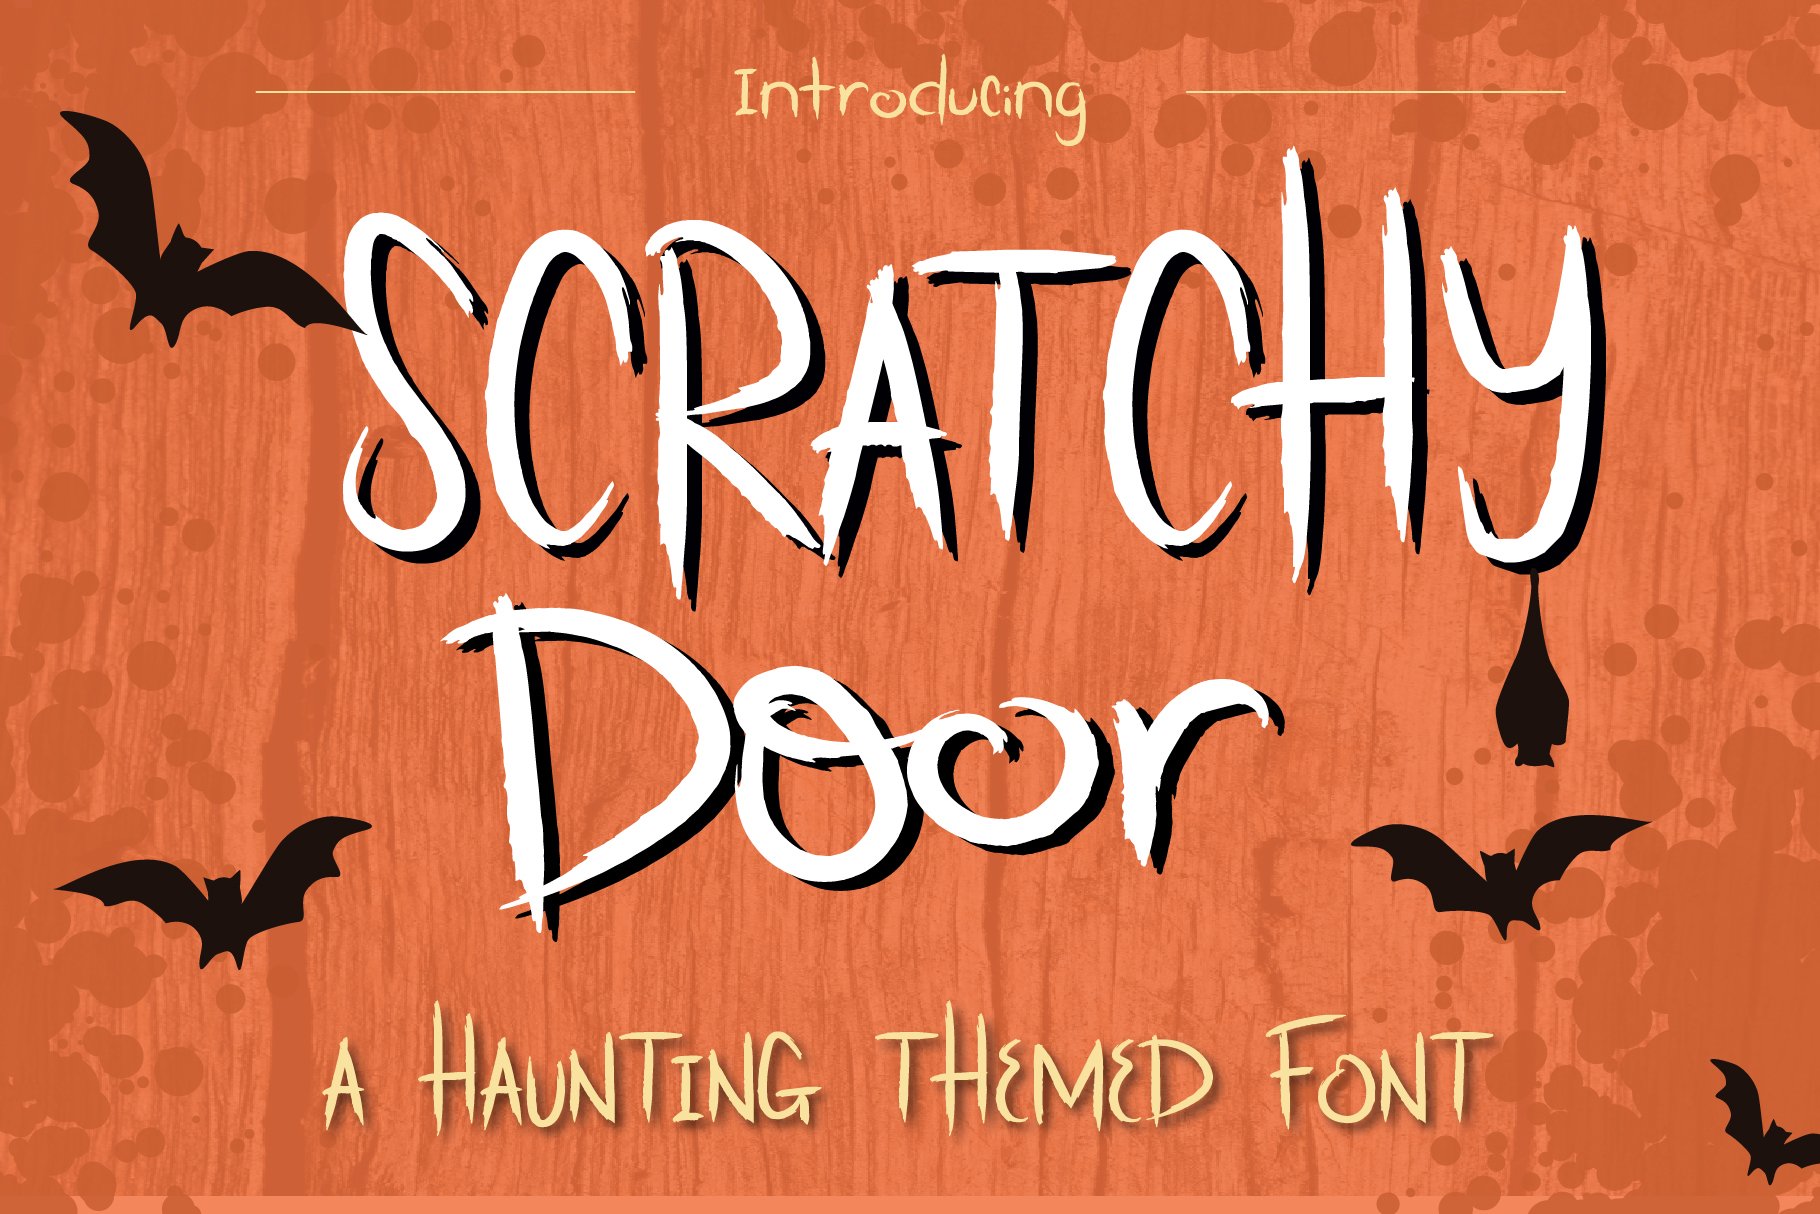 Scratchy Door Halloween Font cover image.